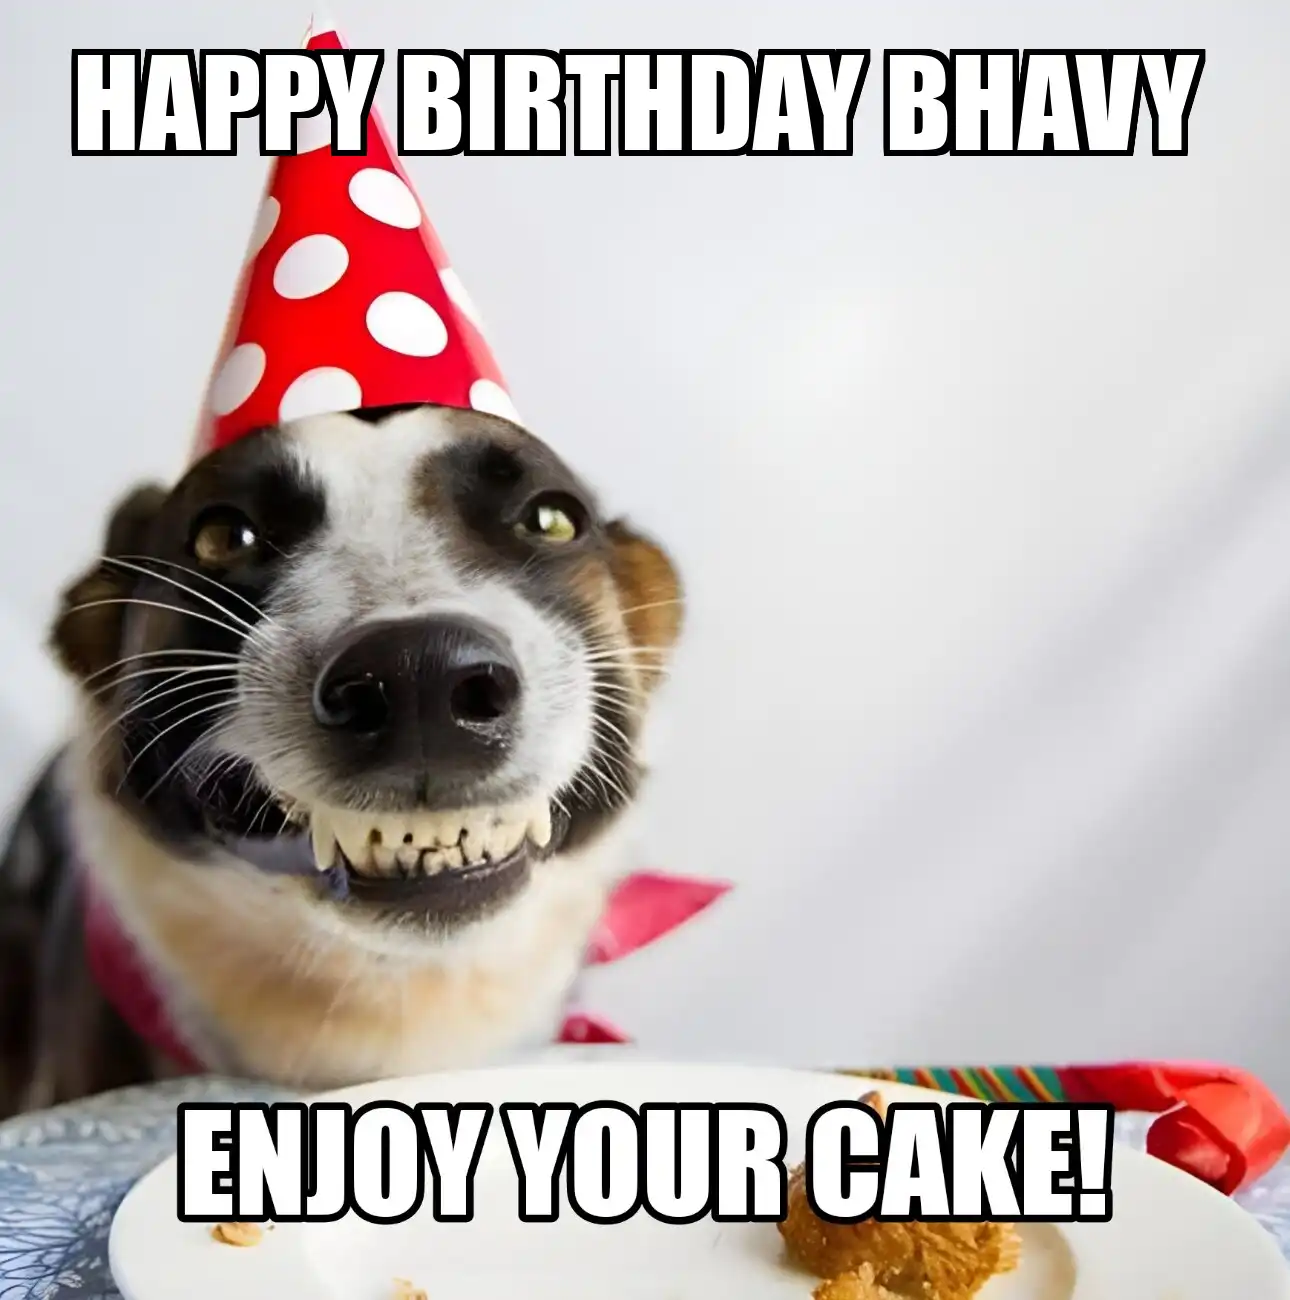 Happy Birthday Bhavy Enjoy Your Cake Dog Meme